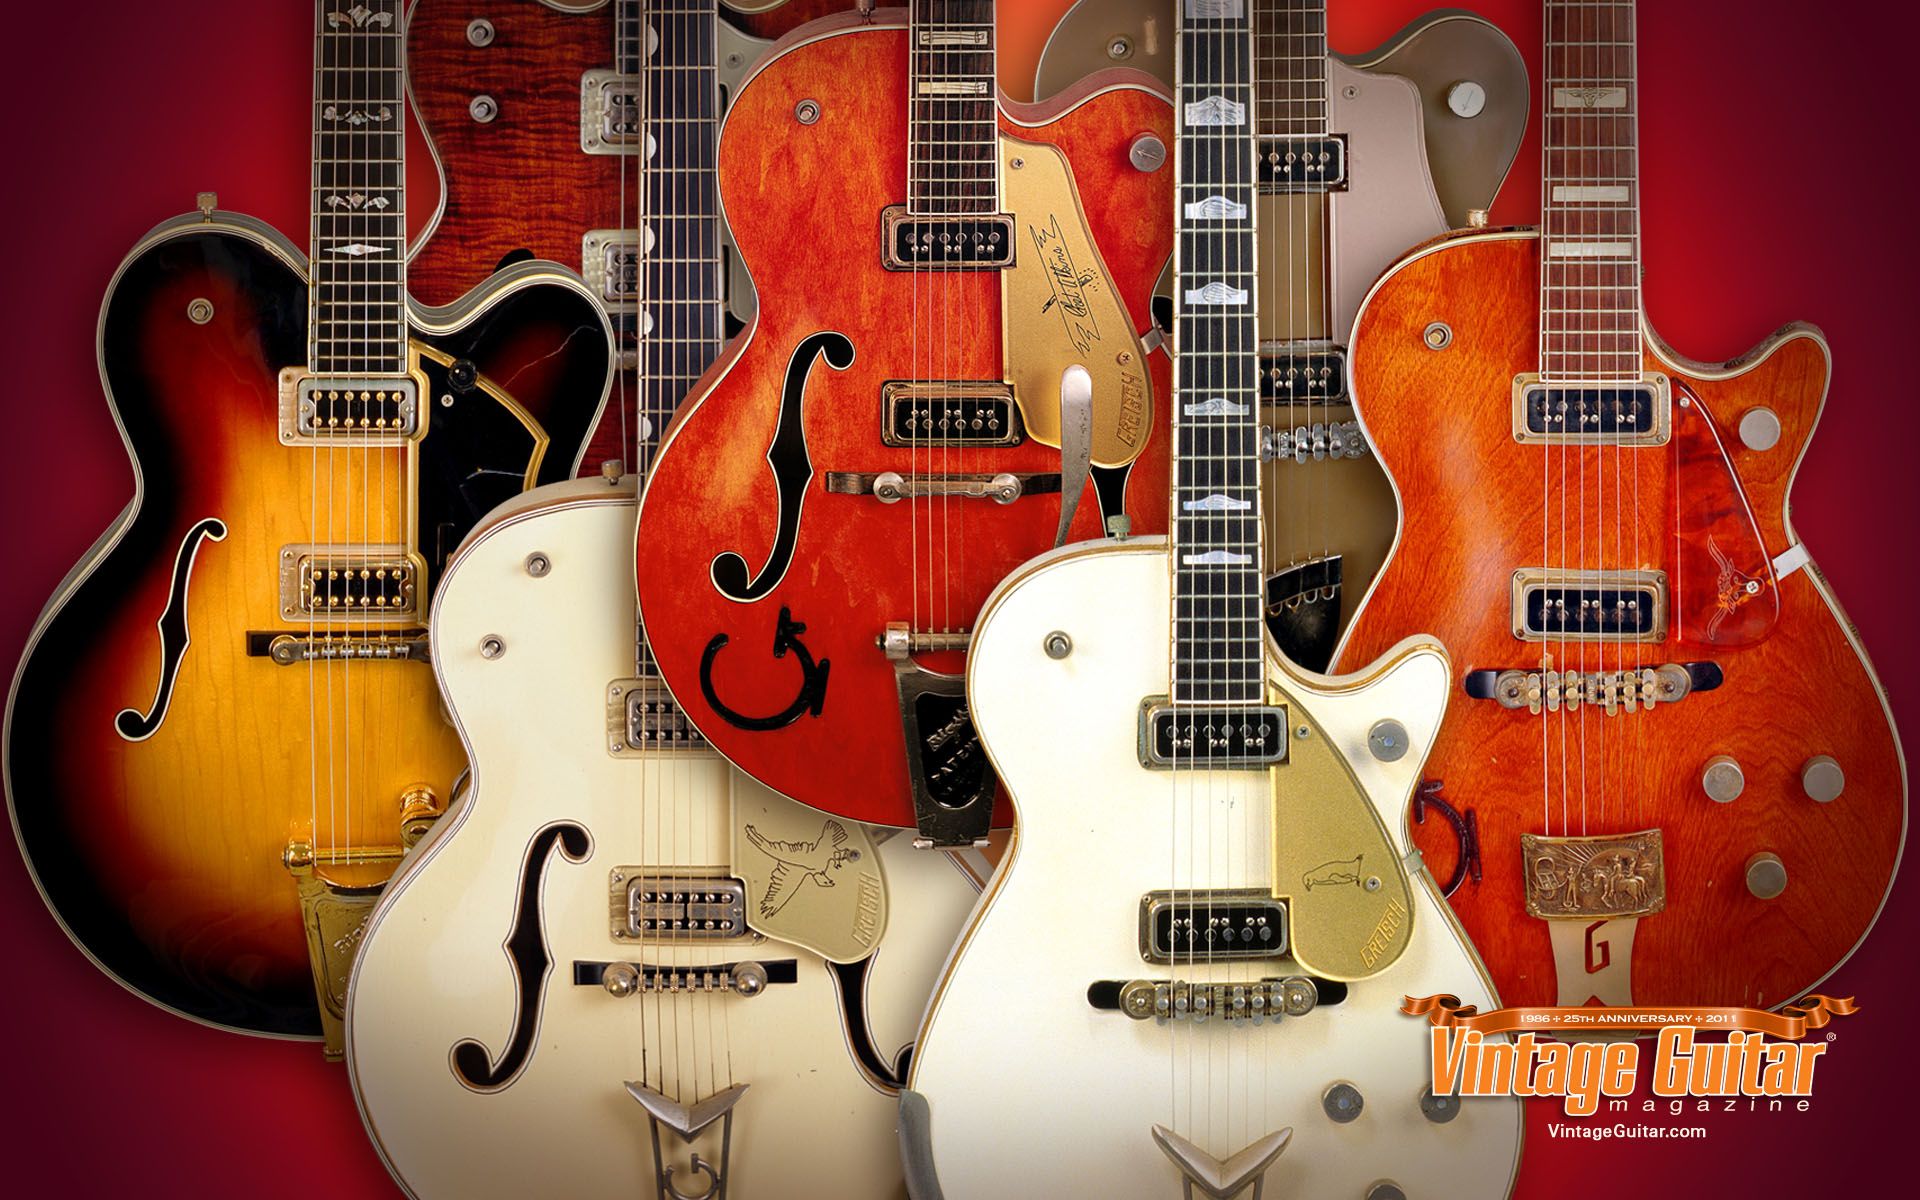 Vintage Guitar Wallpapers 4k Hd Vintage Guitar Backgrounds On